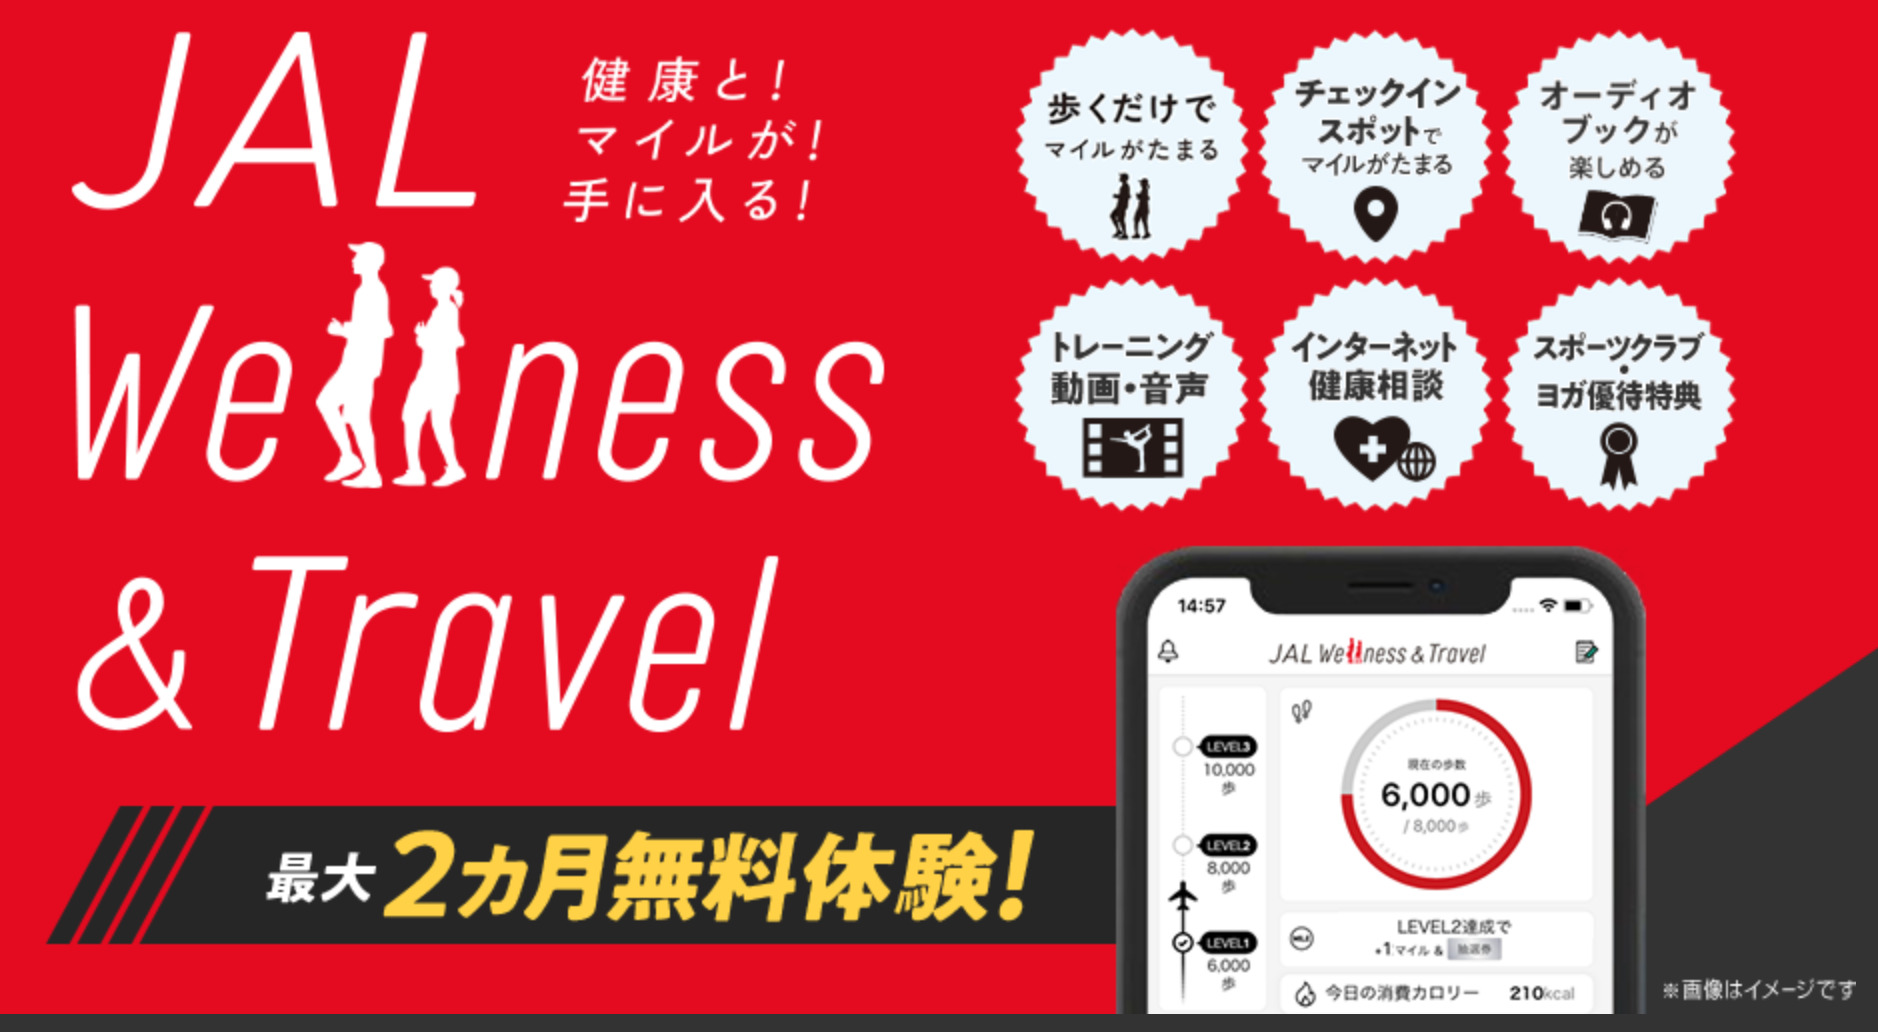 JAL Wellness & Travelアプリでマイルを貯めよう！1ヶ月で何マイル貯まるか検証してみました！